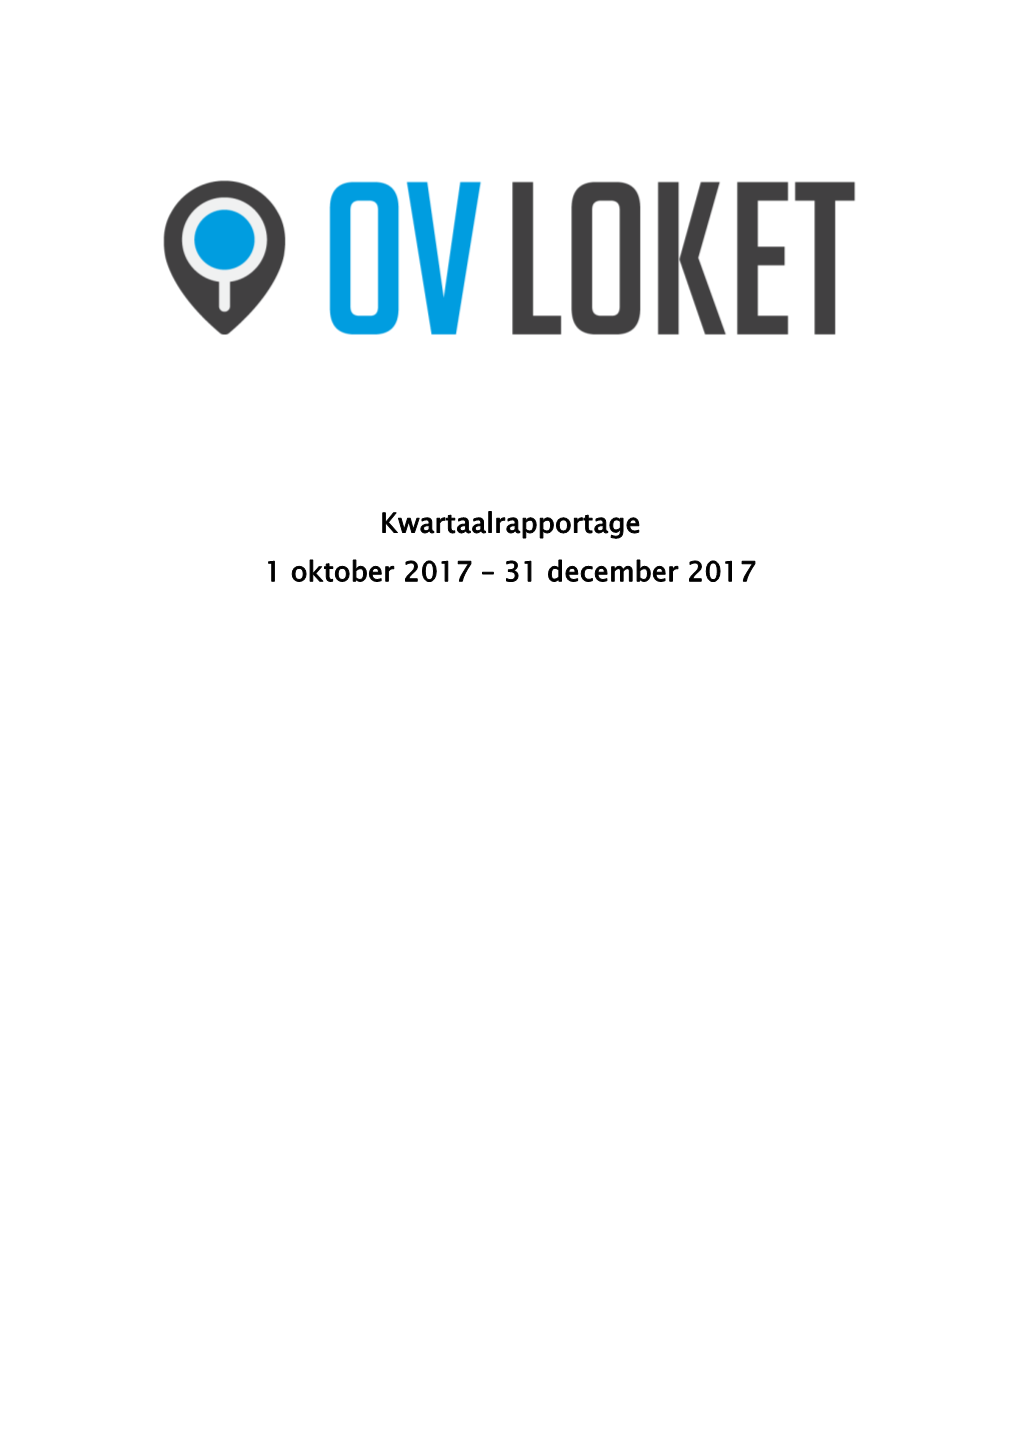 Kwartaalrapportage OV Loket Vierde Kwartaal 2017